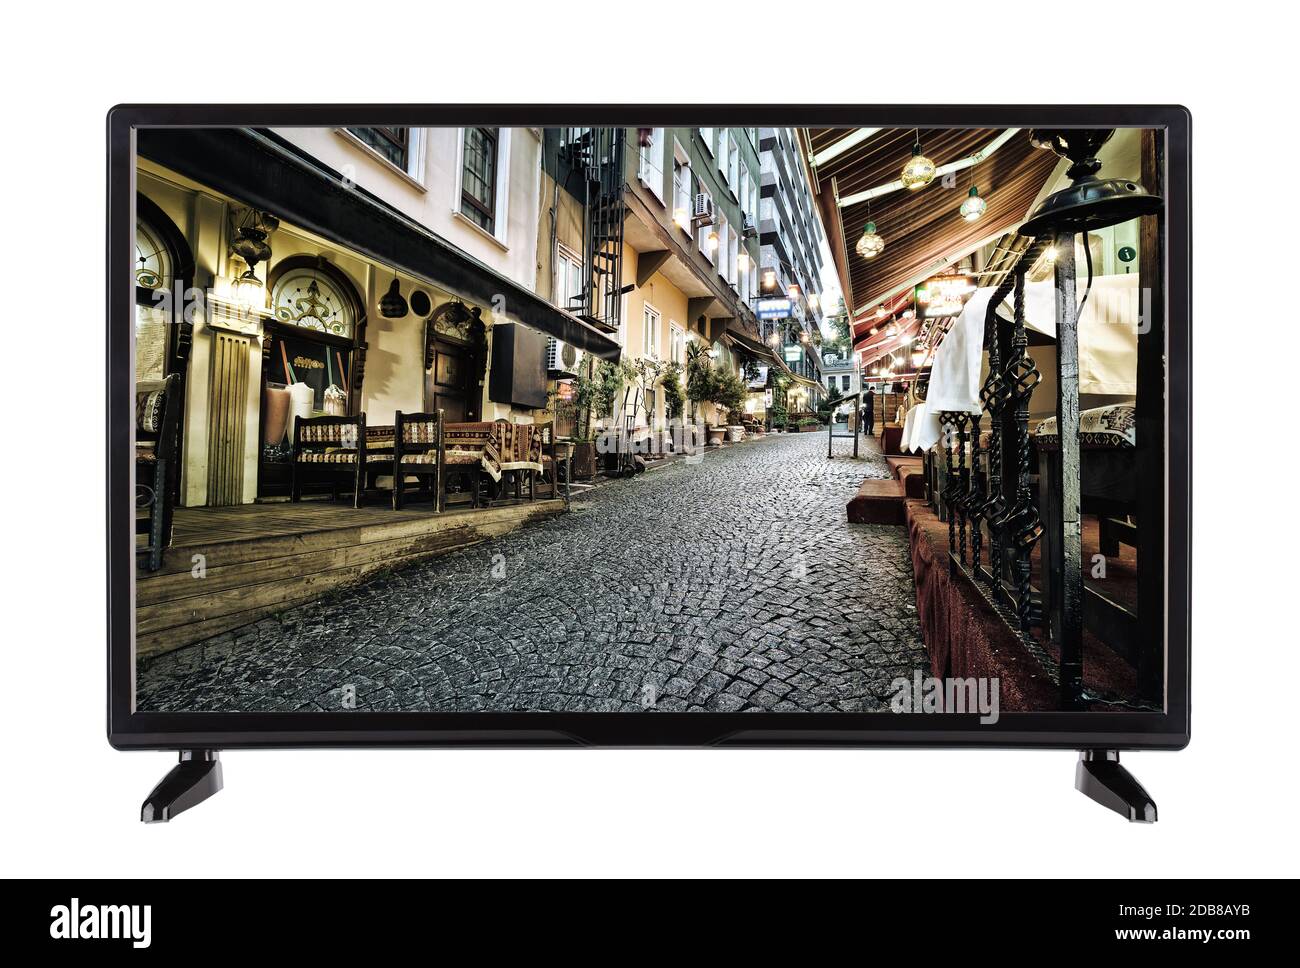 Un televisore ad alta definizione con street immagine della città e la strada di pietra Foto Stock